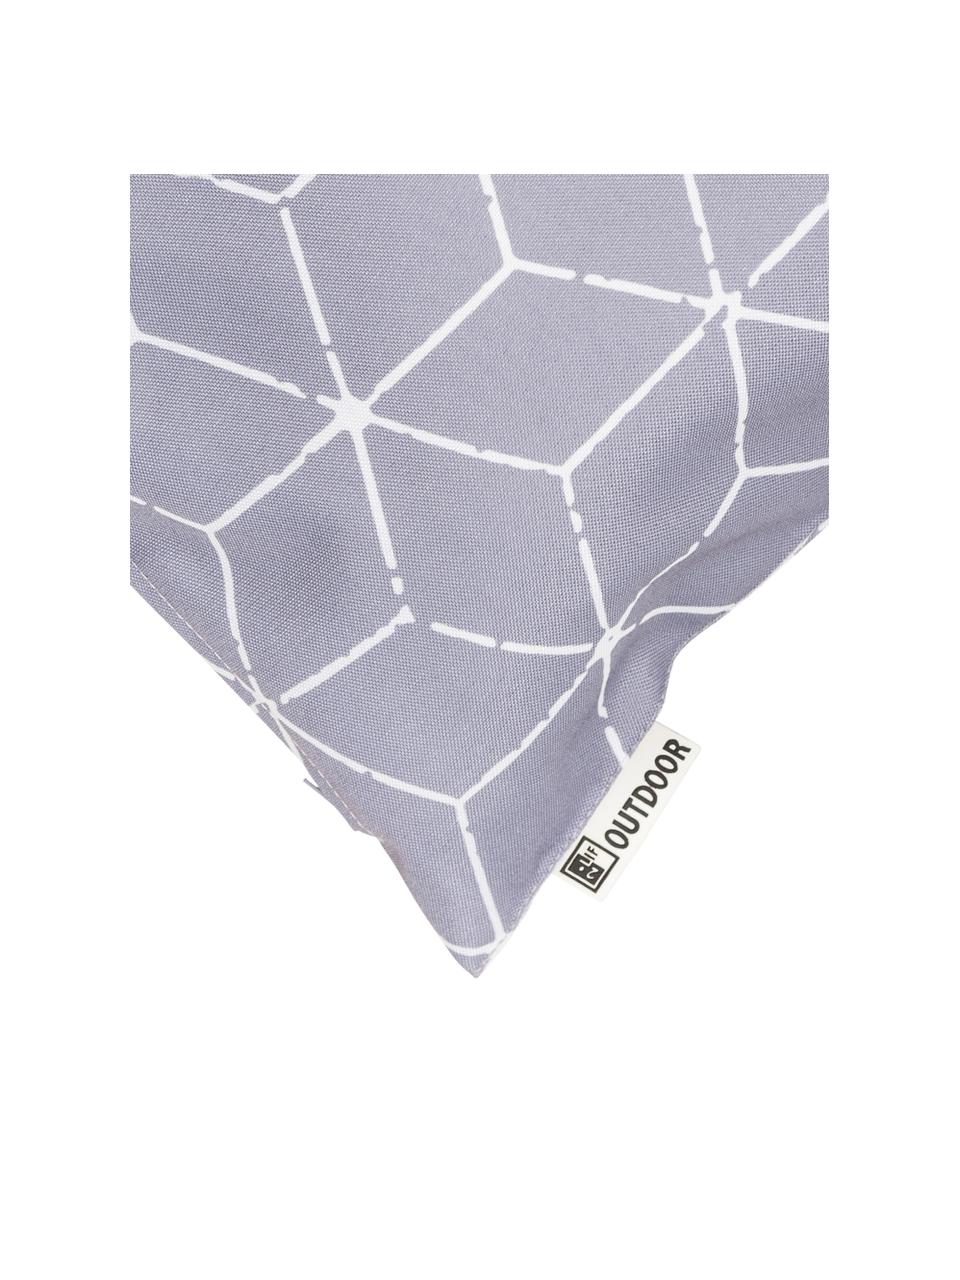 Venkovní polštář s grafickým vzorem Cube, s výplní, 100 % polyester, Šedá, bílá, Š 30 cm